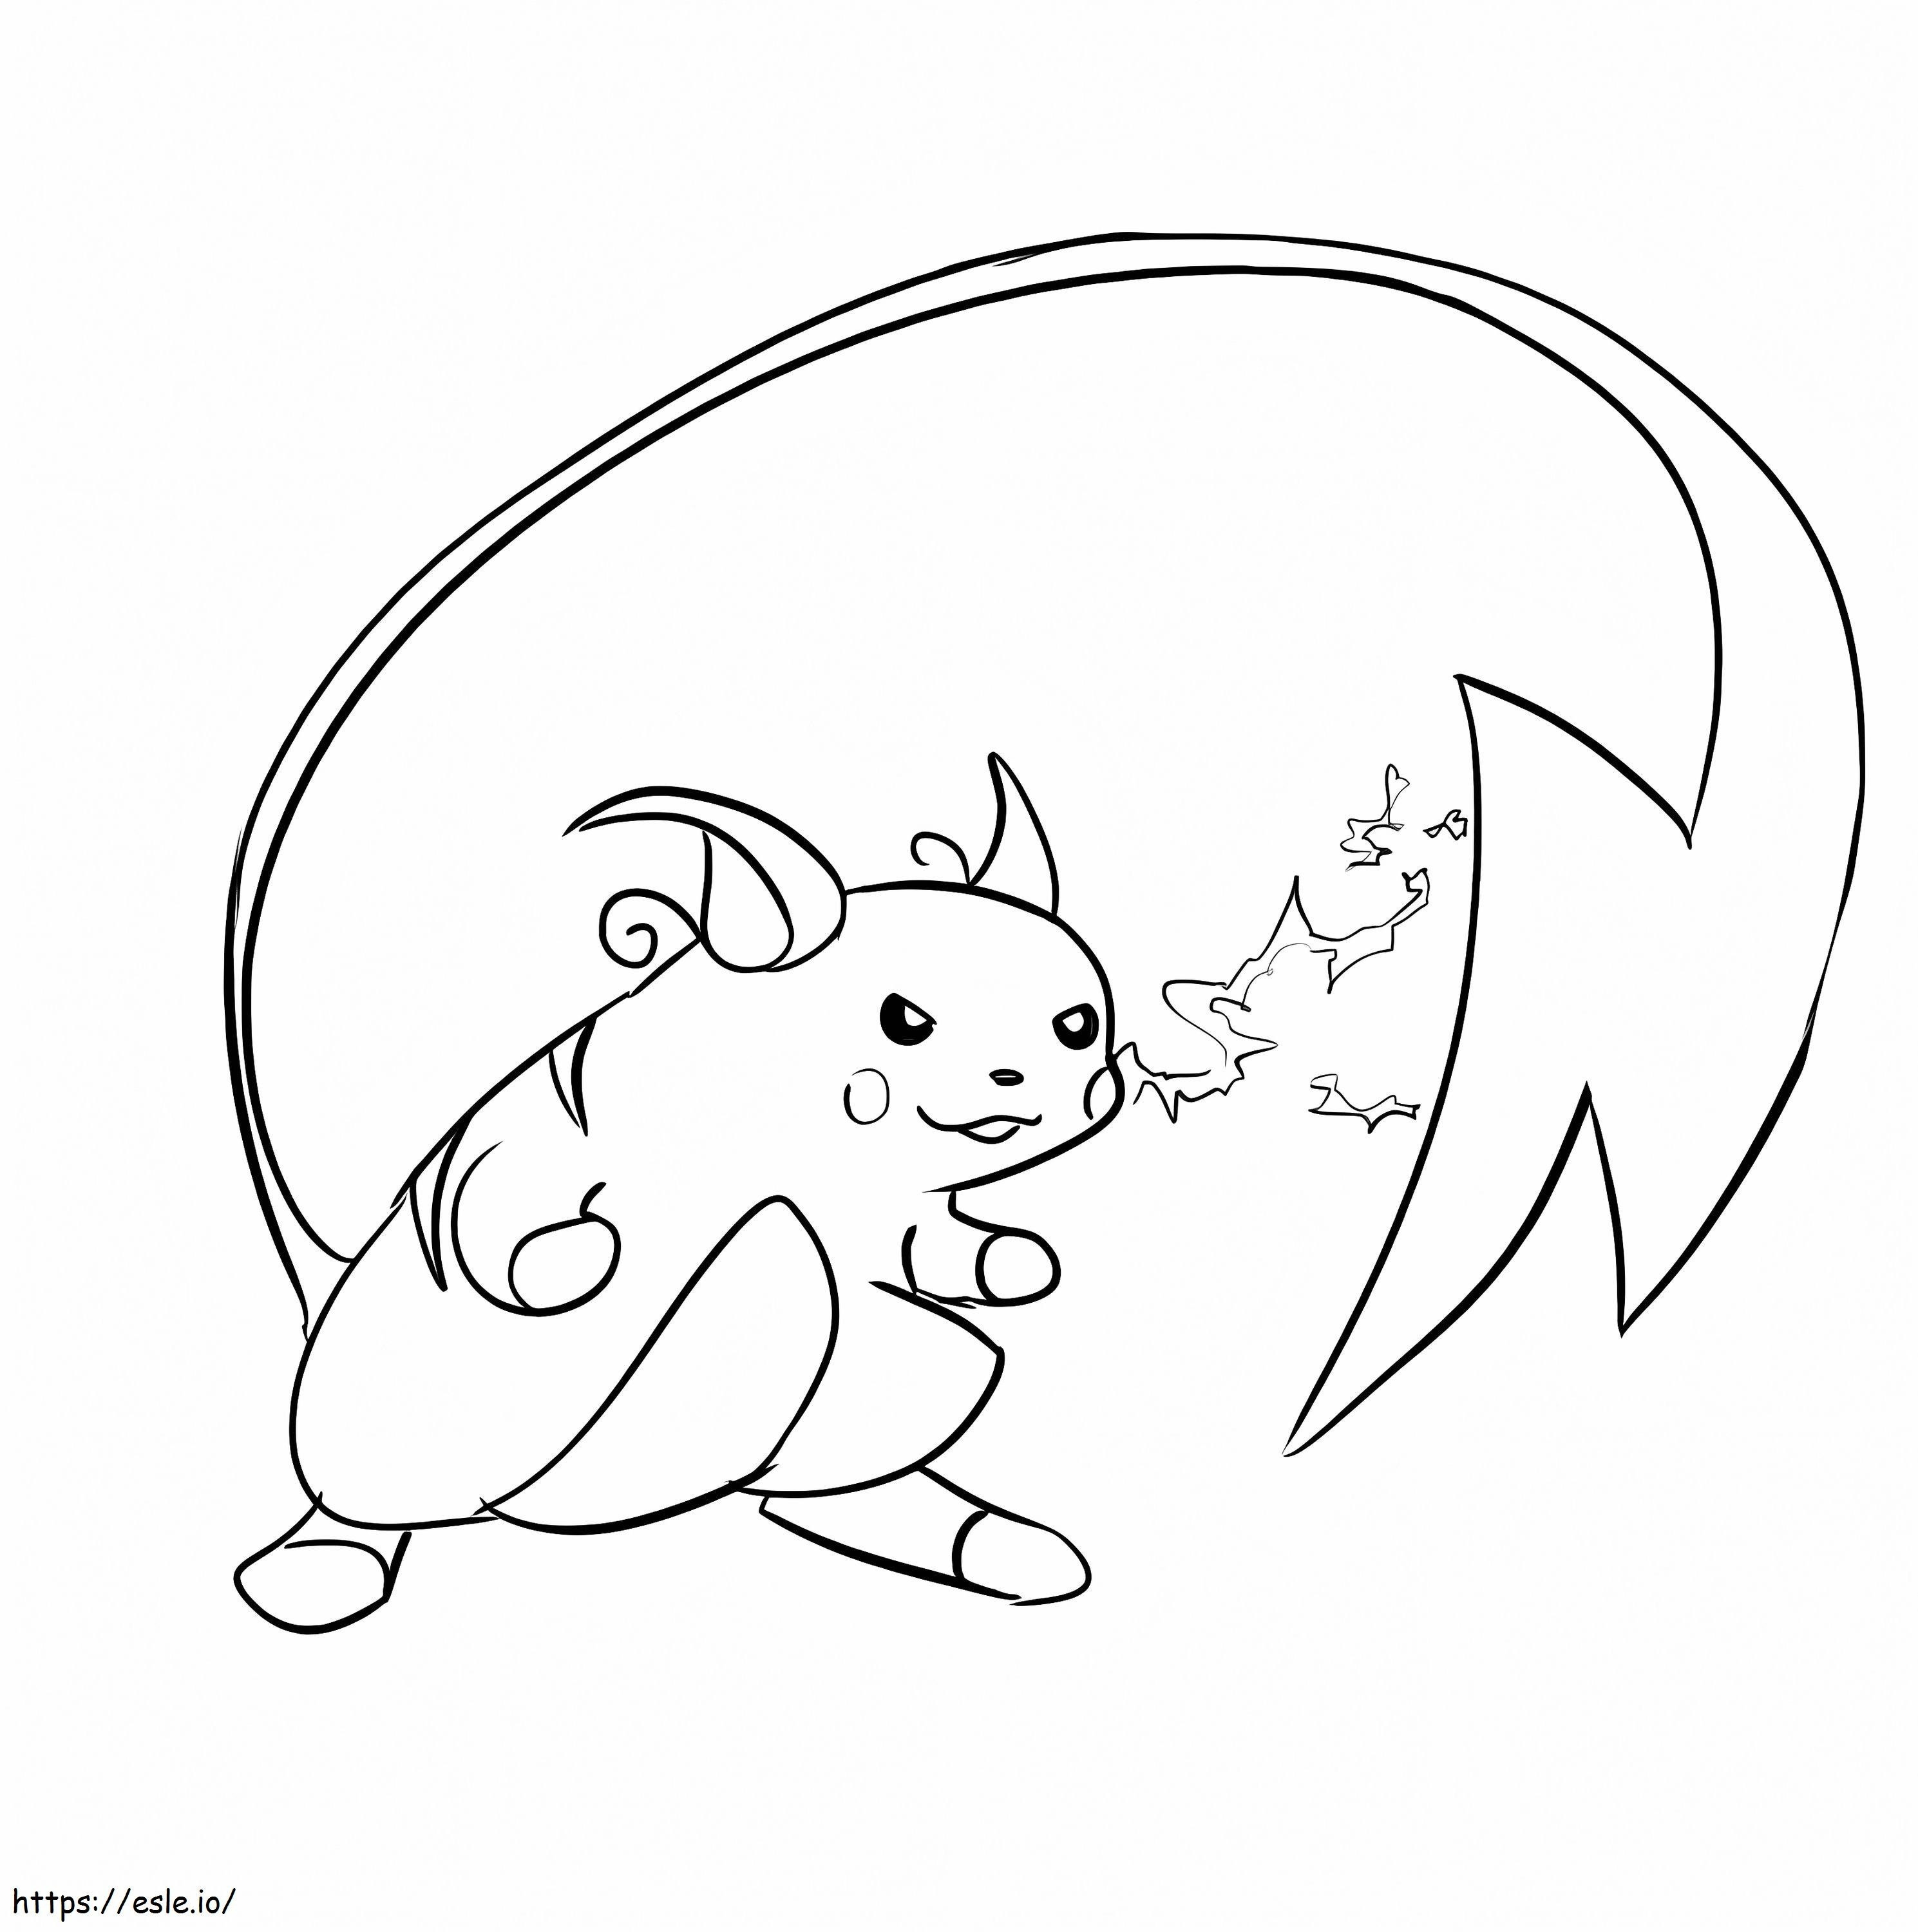 Coloriage Pokemon Raichu 3 à imprimer dessin